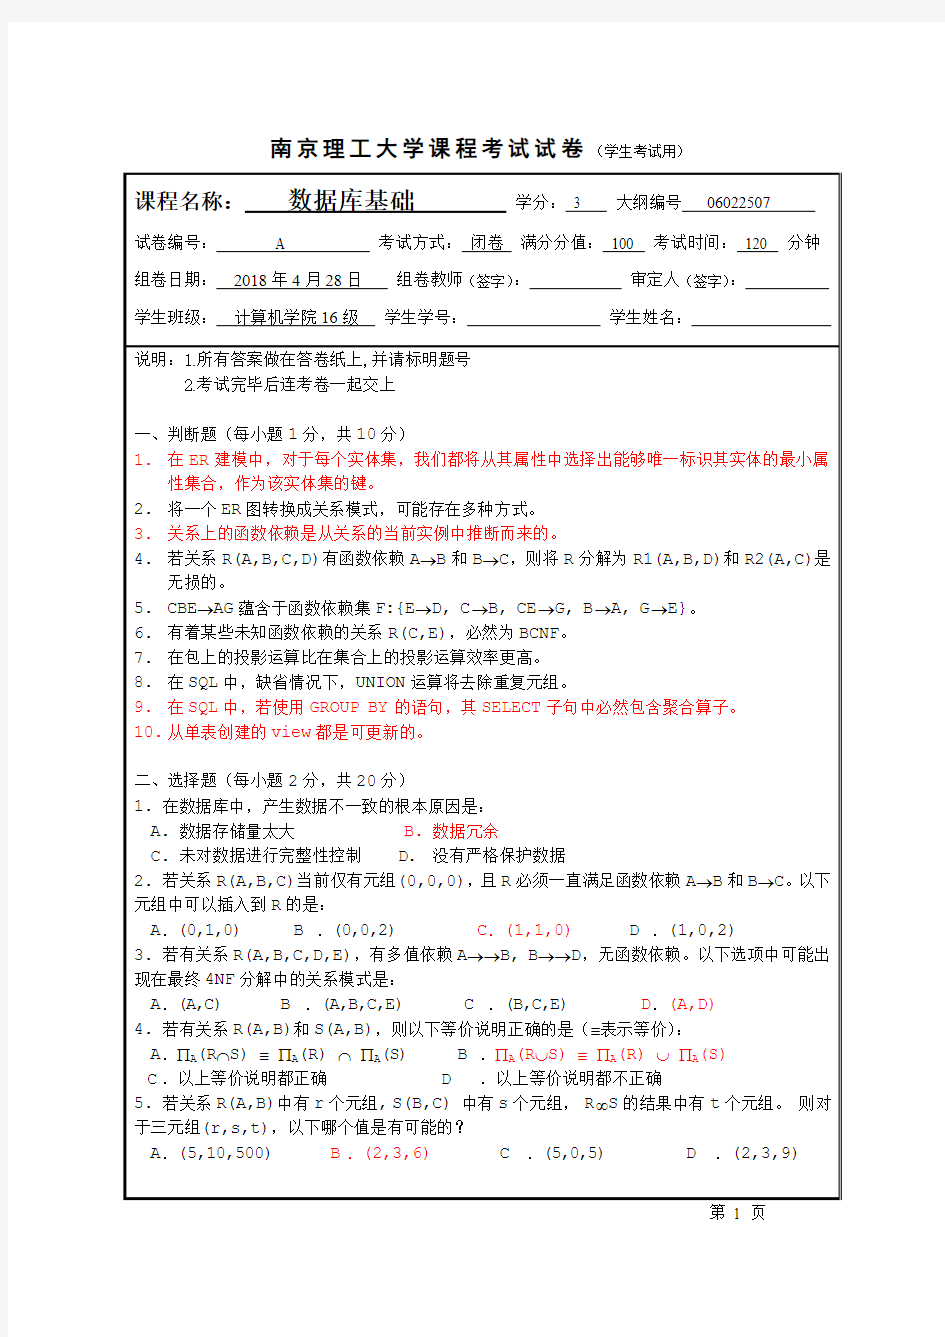 南京理工大学 数据库系统